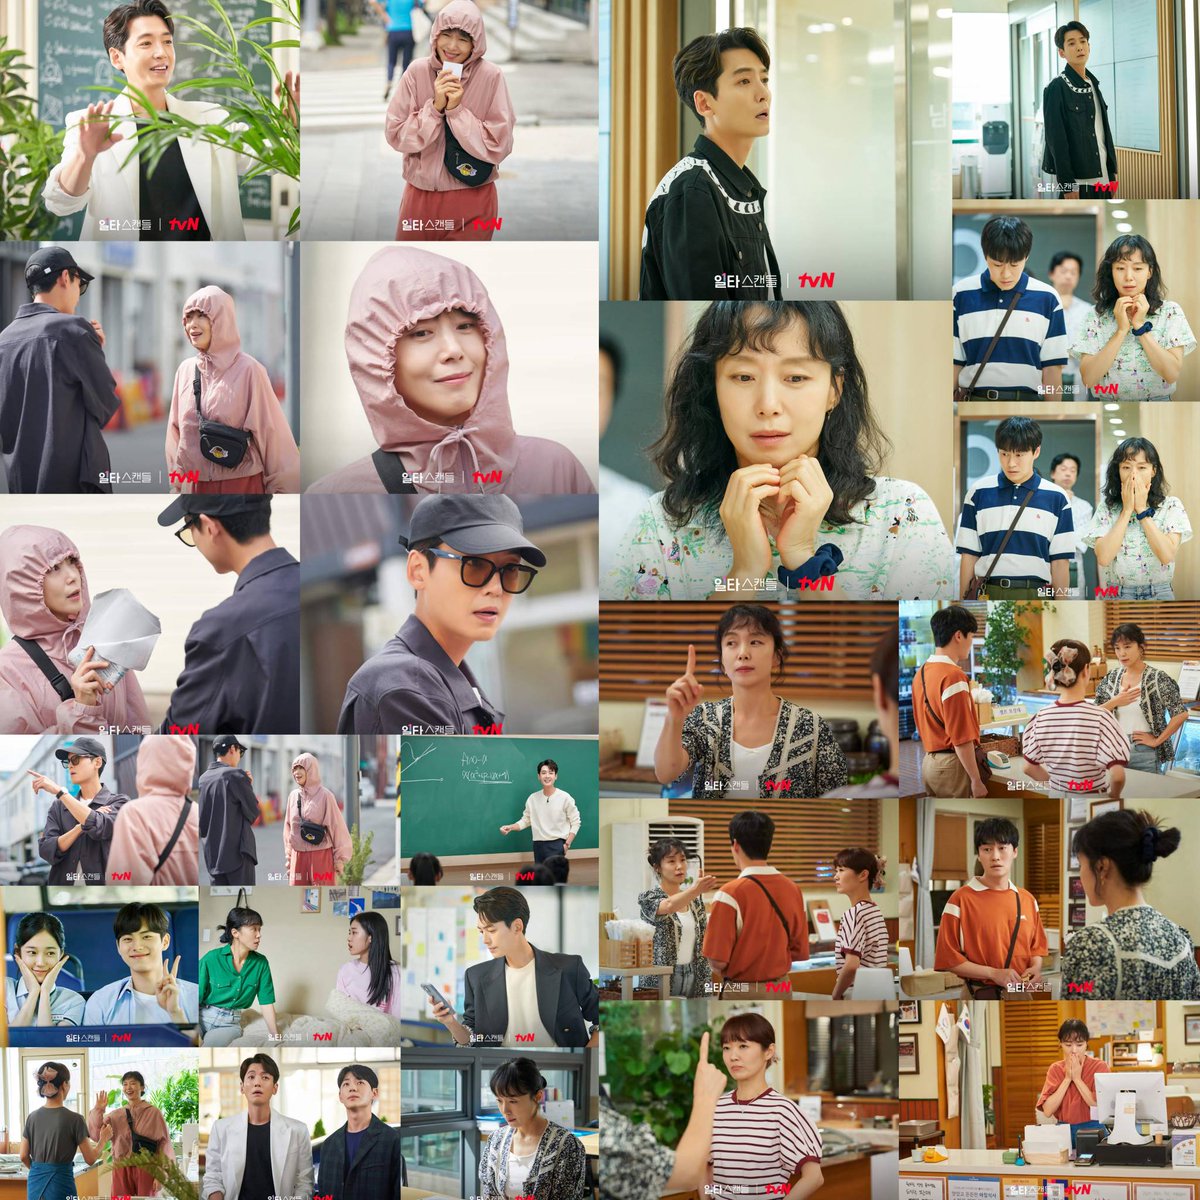 tvN drama #CrashCourseInRomance / #IltaScandal / #OneShotScandal Stills ~ #JeonDoYeon #JungKyungHo #LeeBongRyeon #OhEuiSik #ShinJaeHa #NohYoonSeo #LeeChaeMin